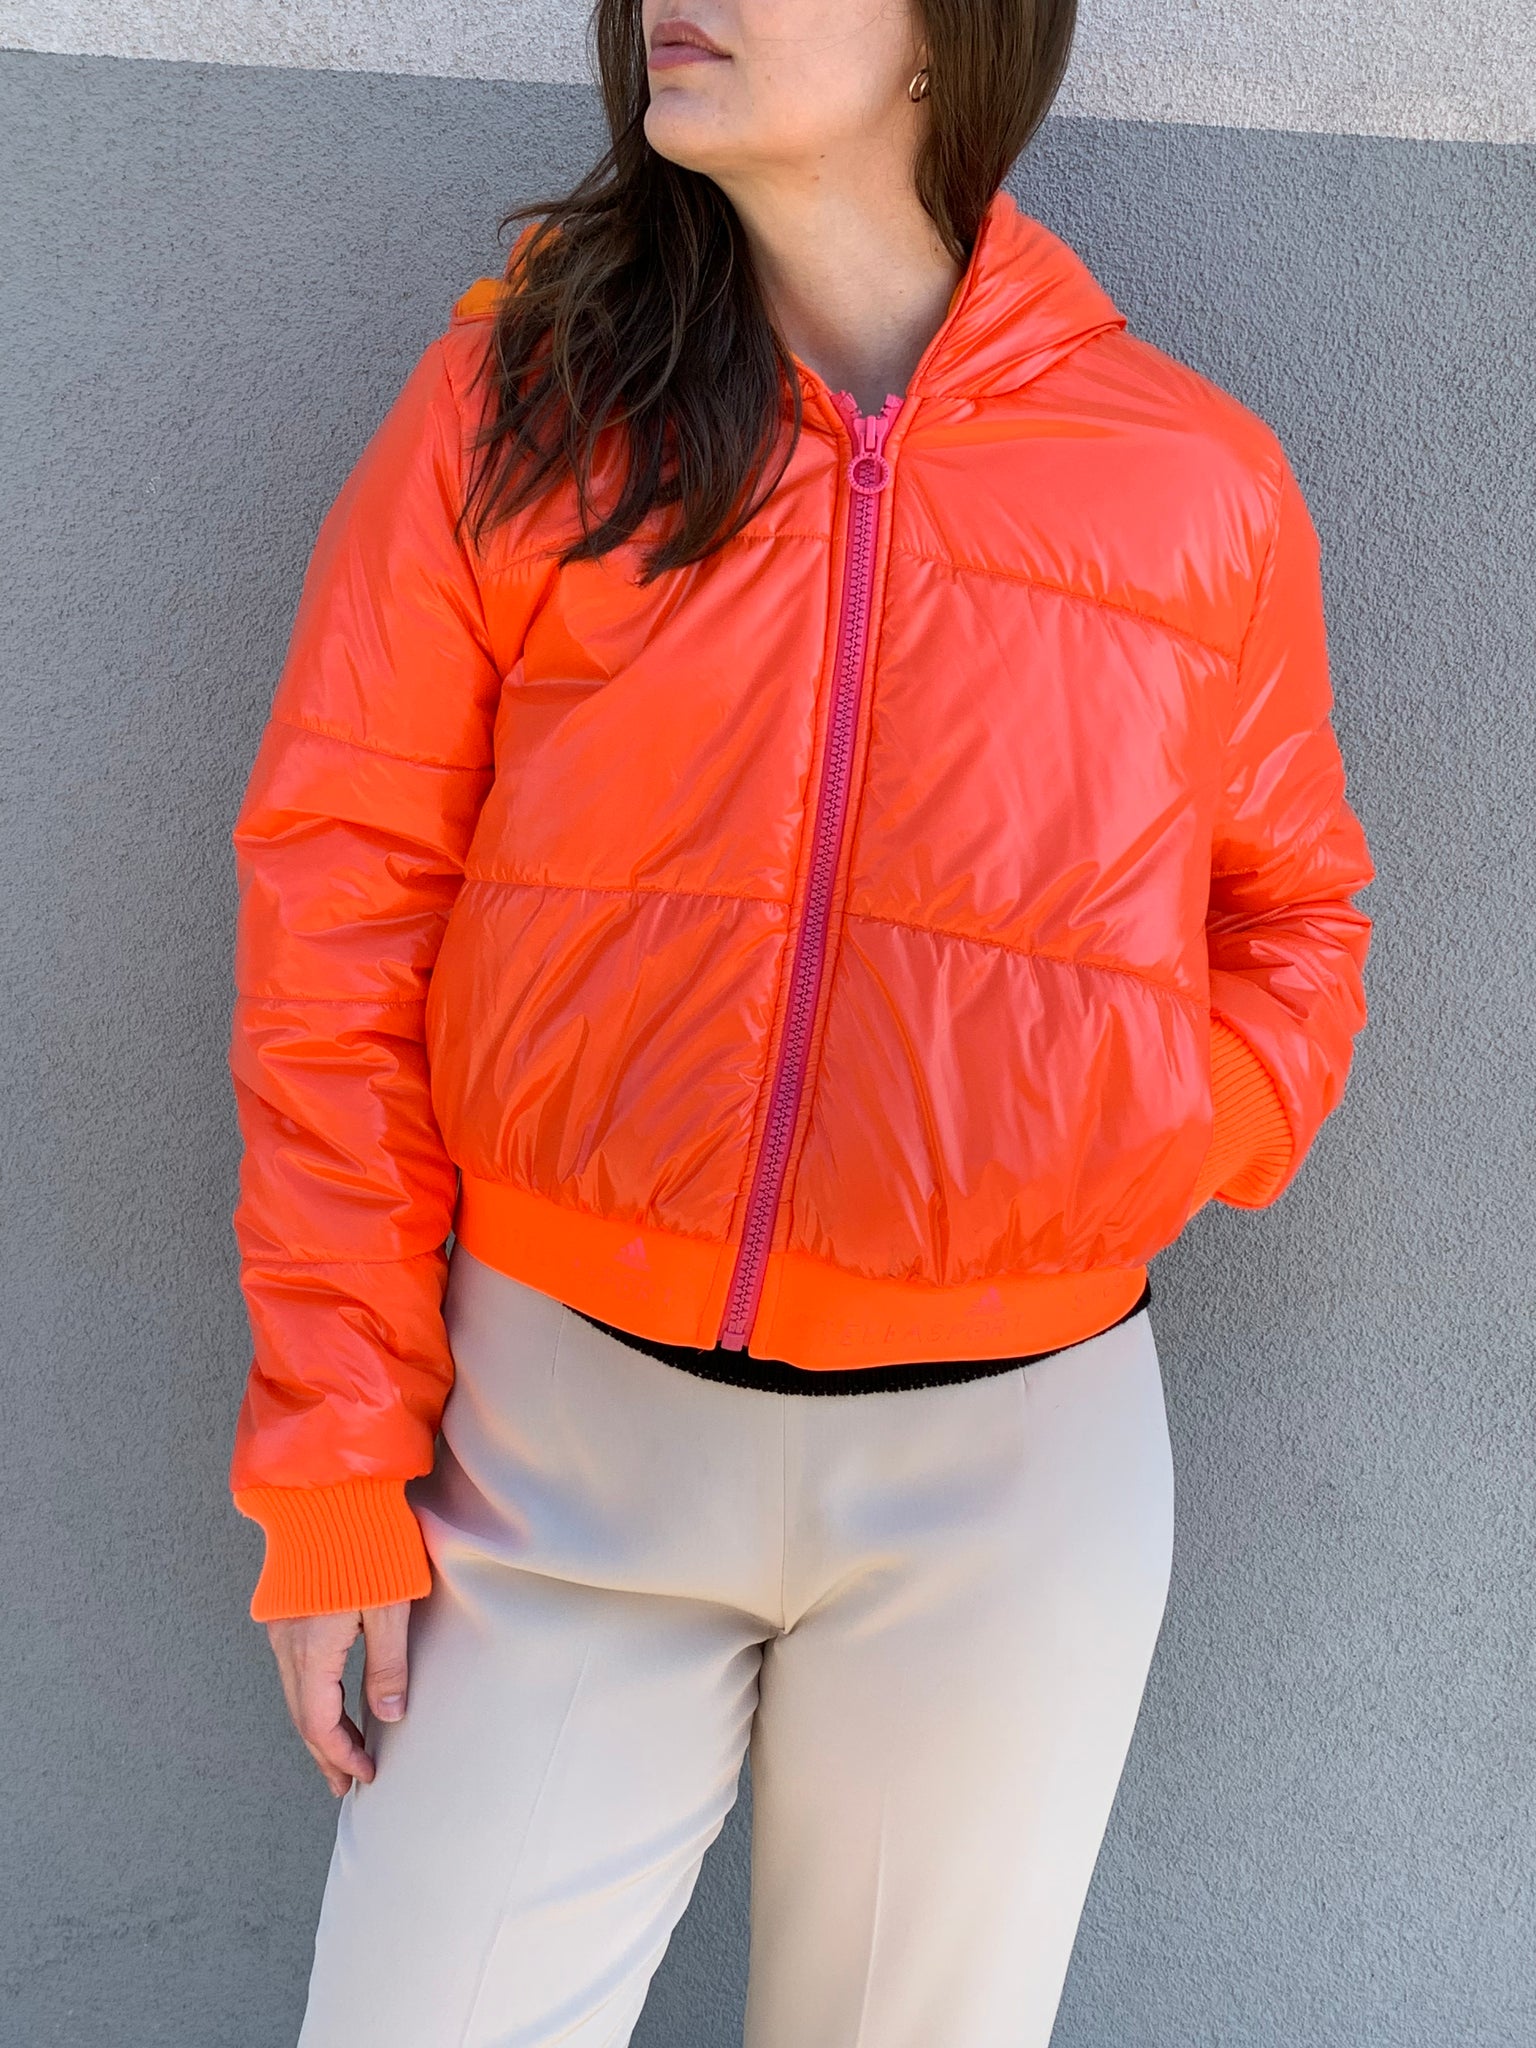 Stellasport orange puff coat